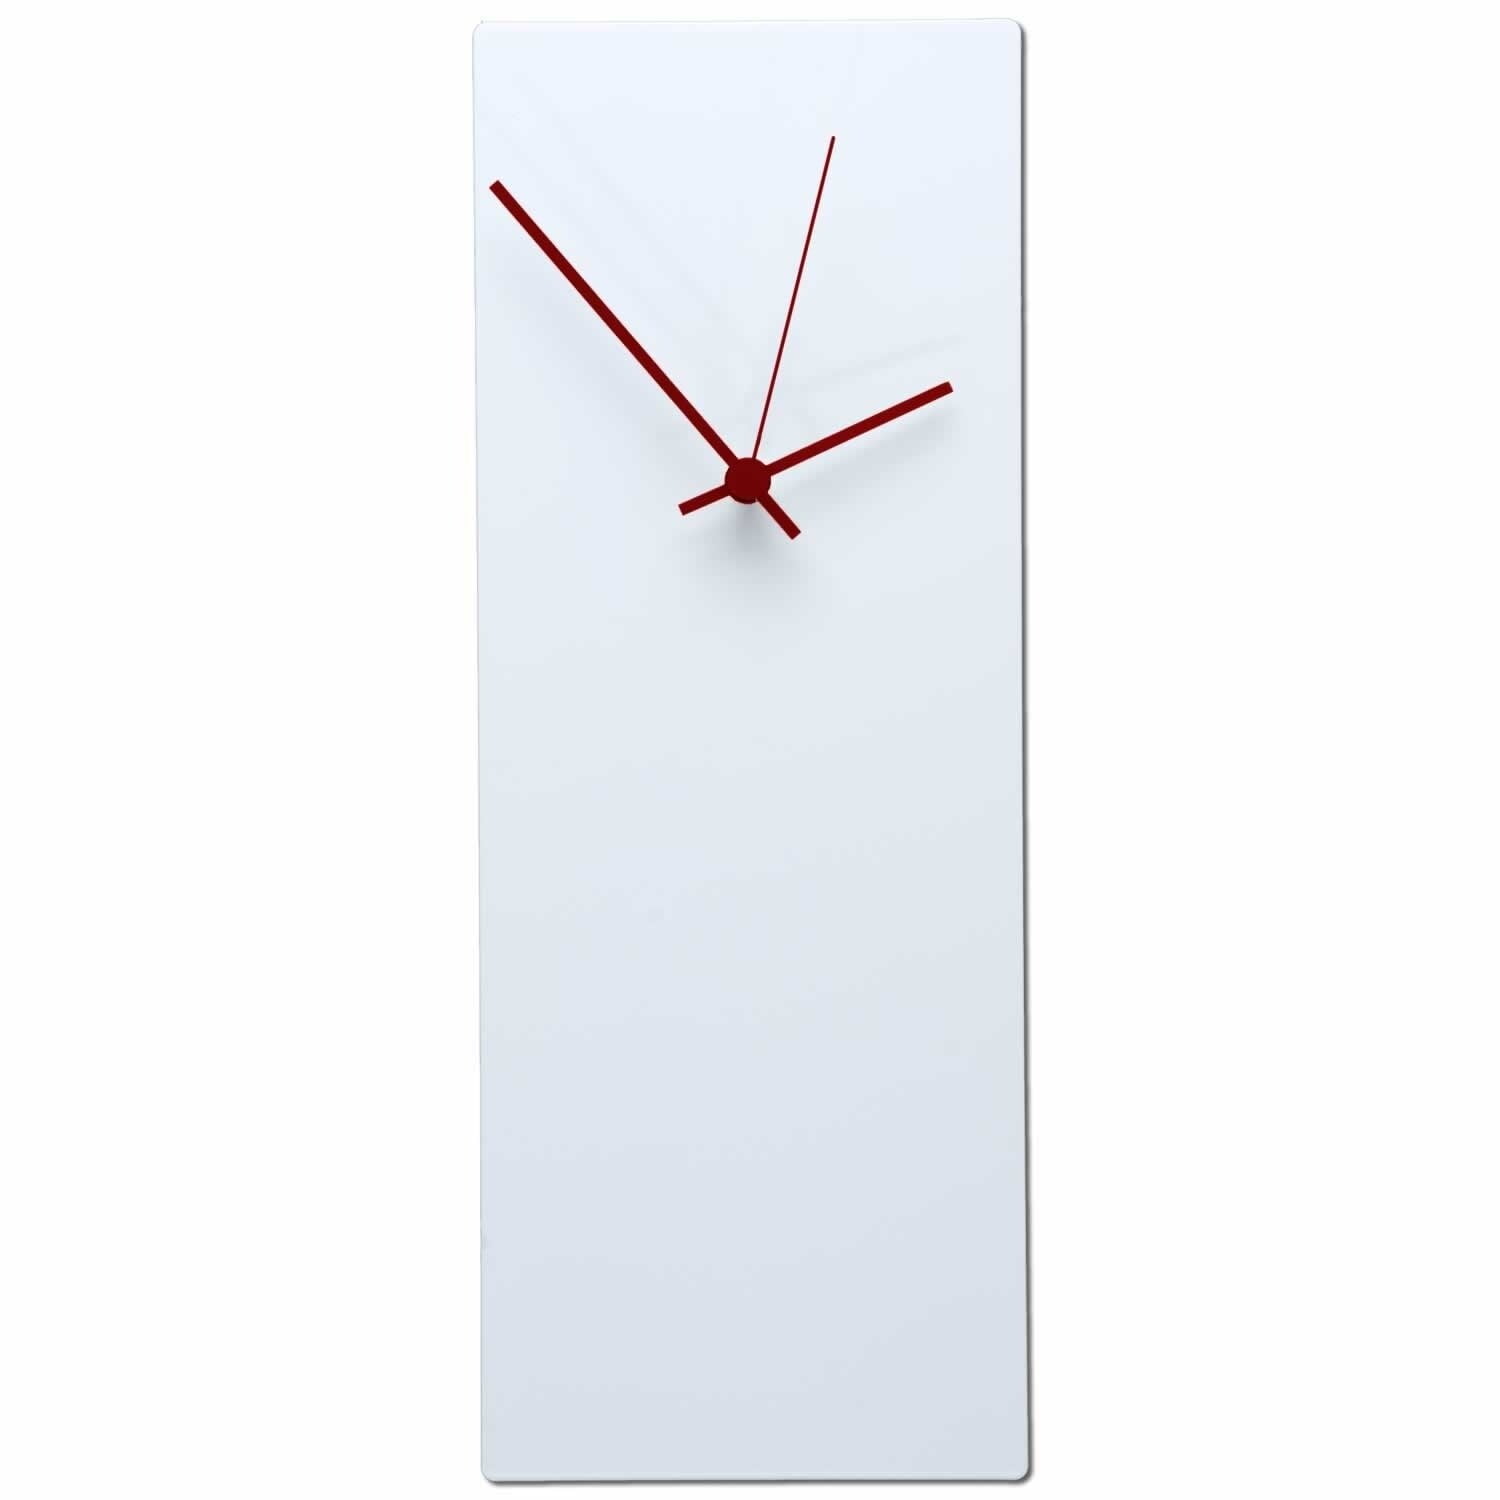 Metal Art Studio Whiteout Clock Large Modern Minimalist White Metal